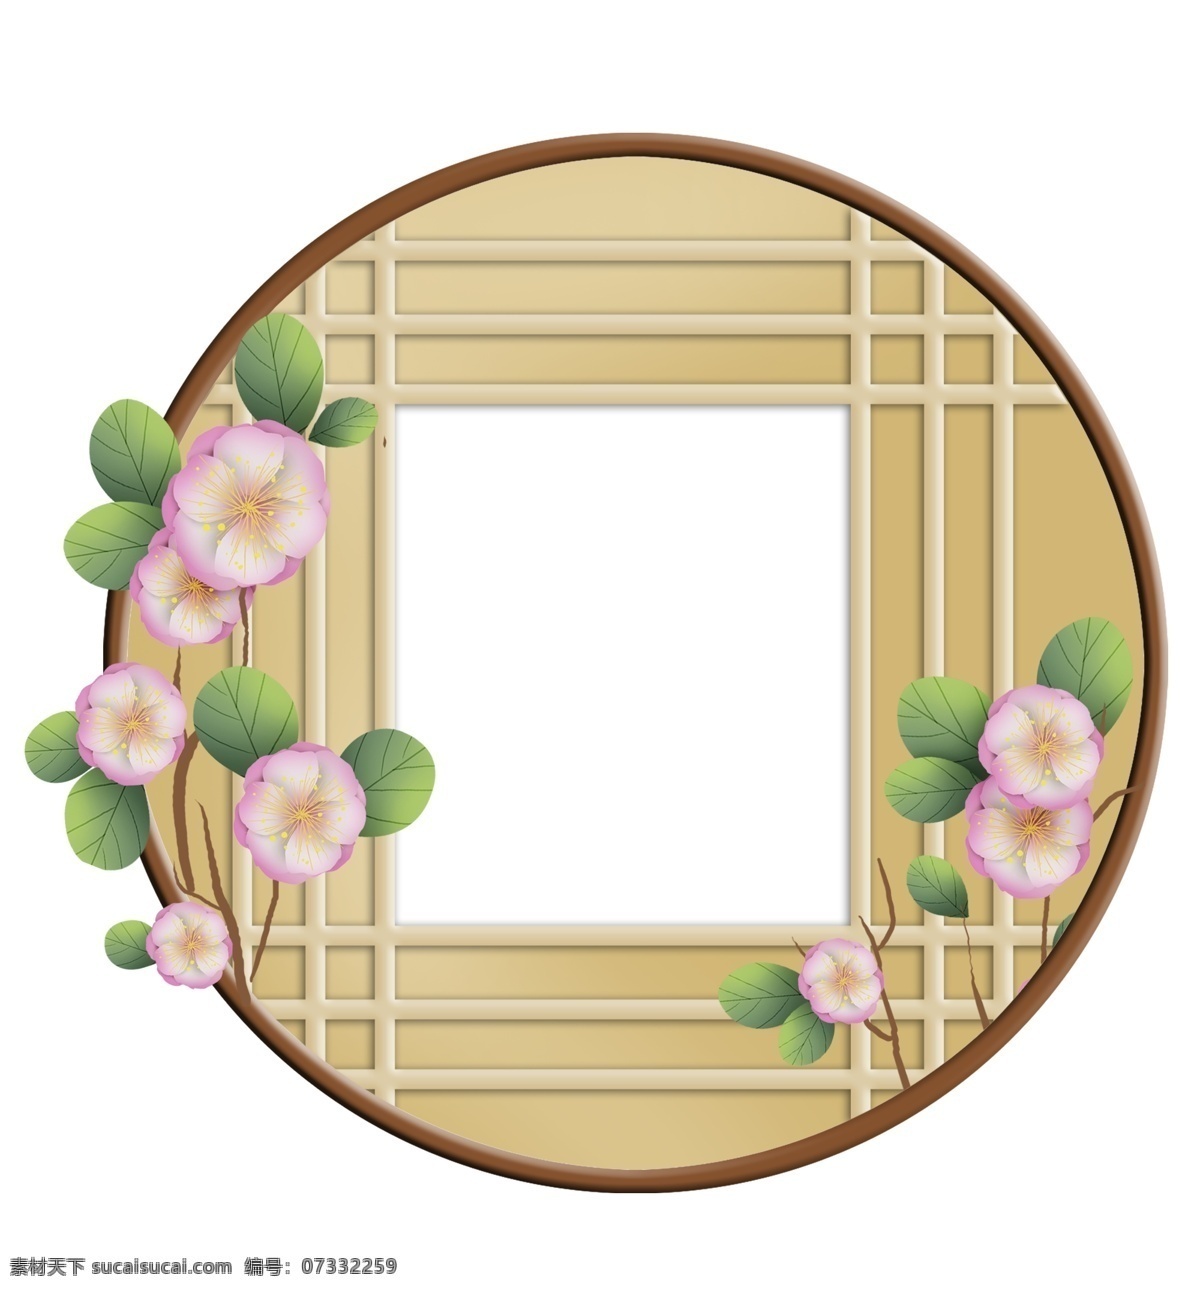 春天 日本 风 窗格 樱花 中式窗格 海棠 中式窗子 中国风 古风 日风 日式窗格 日风窗子